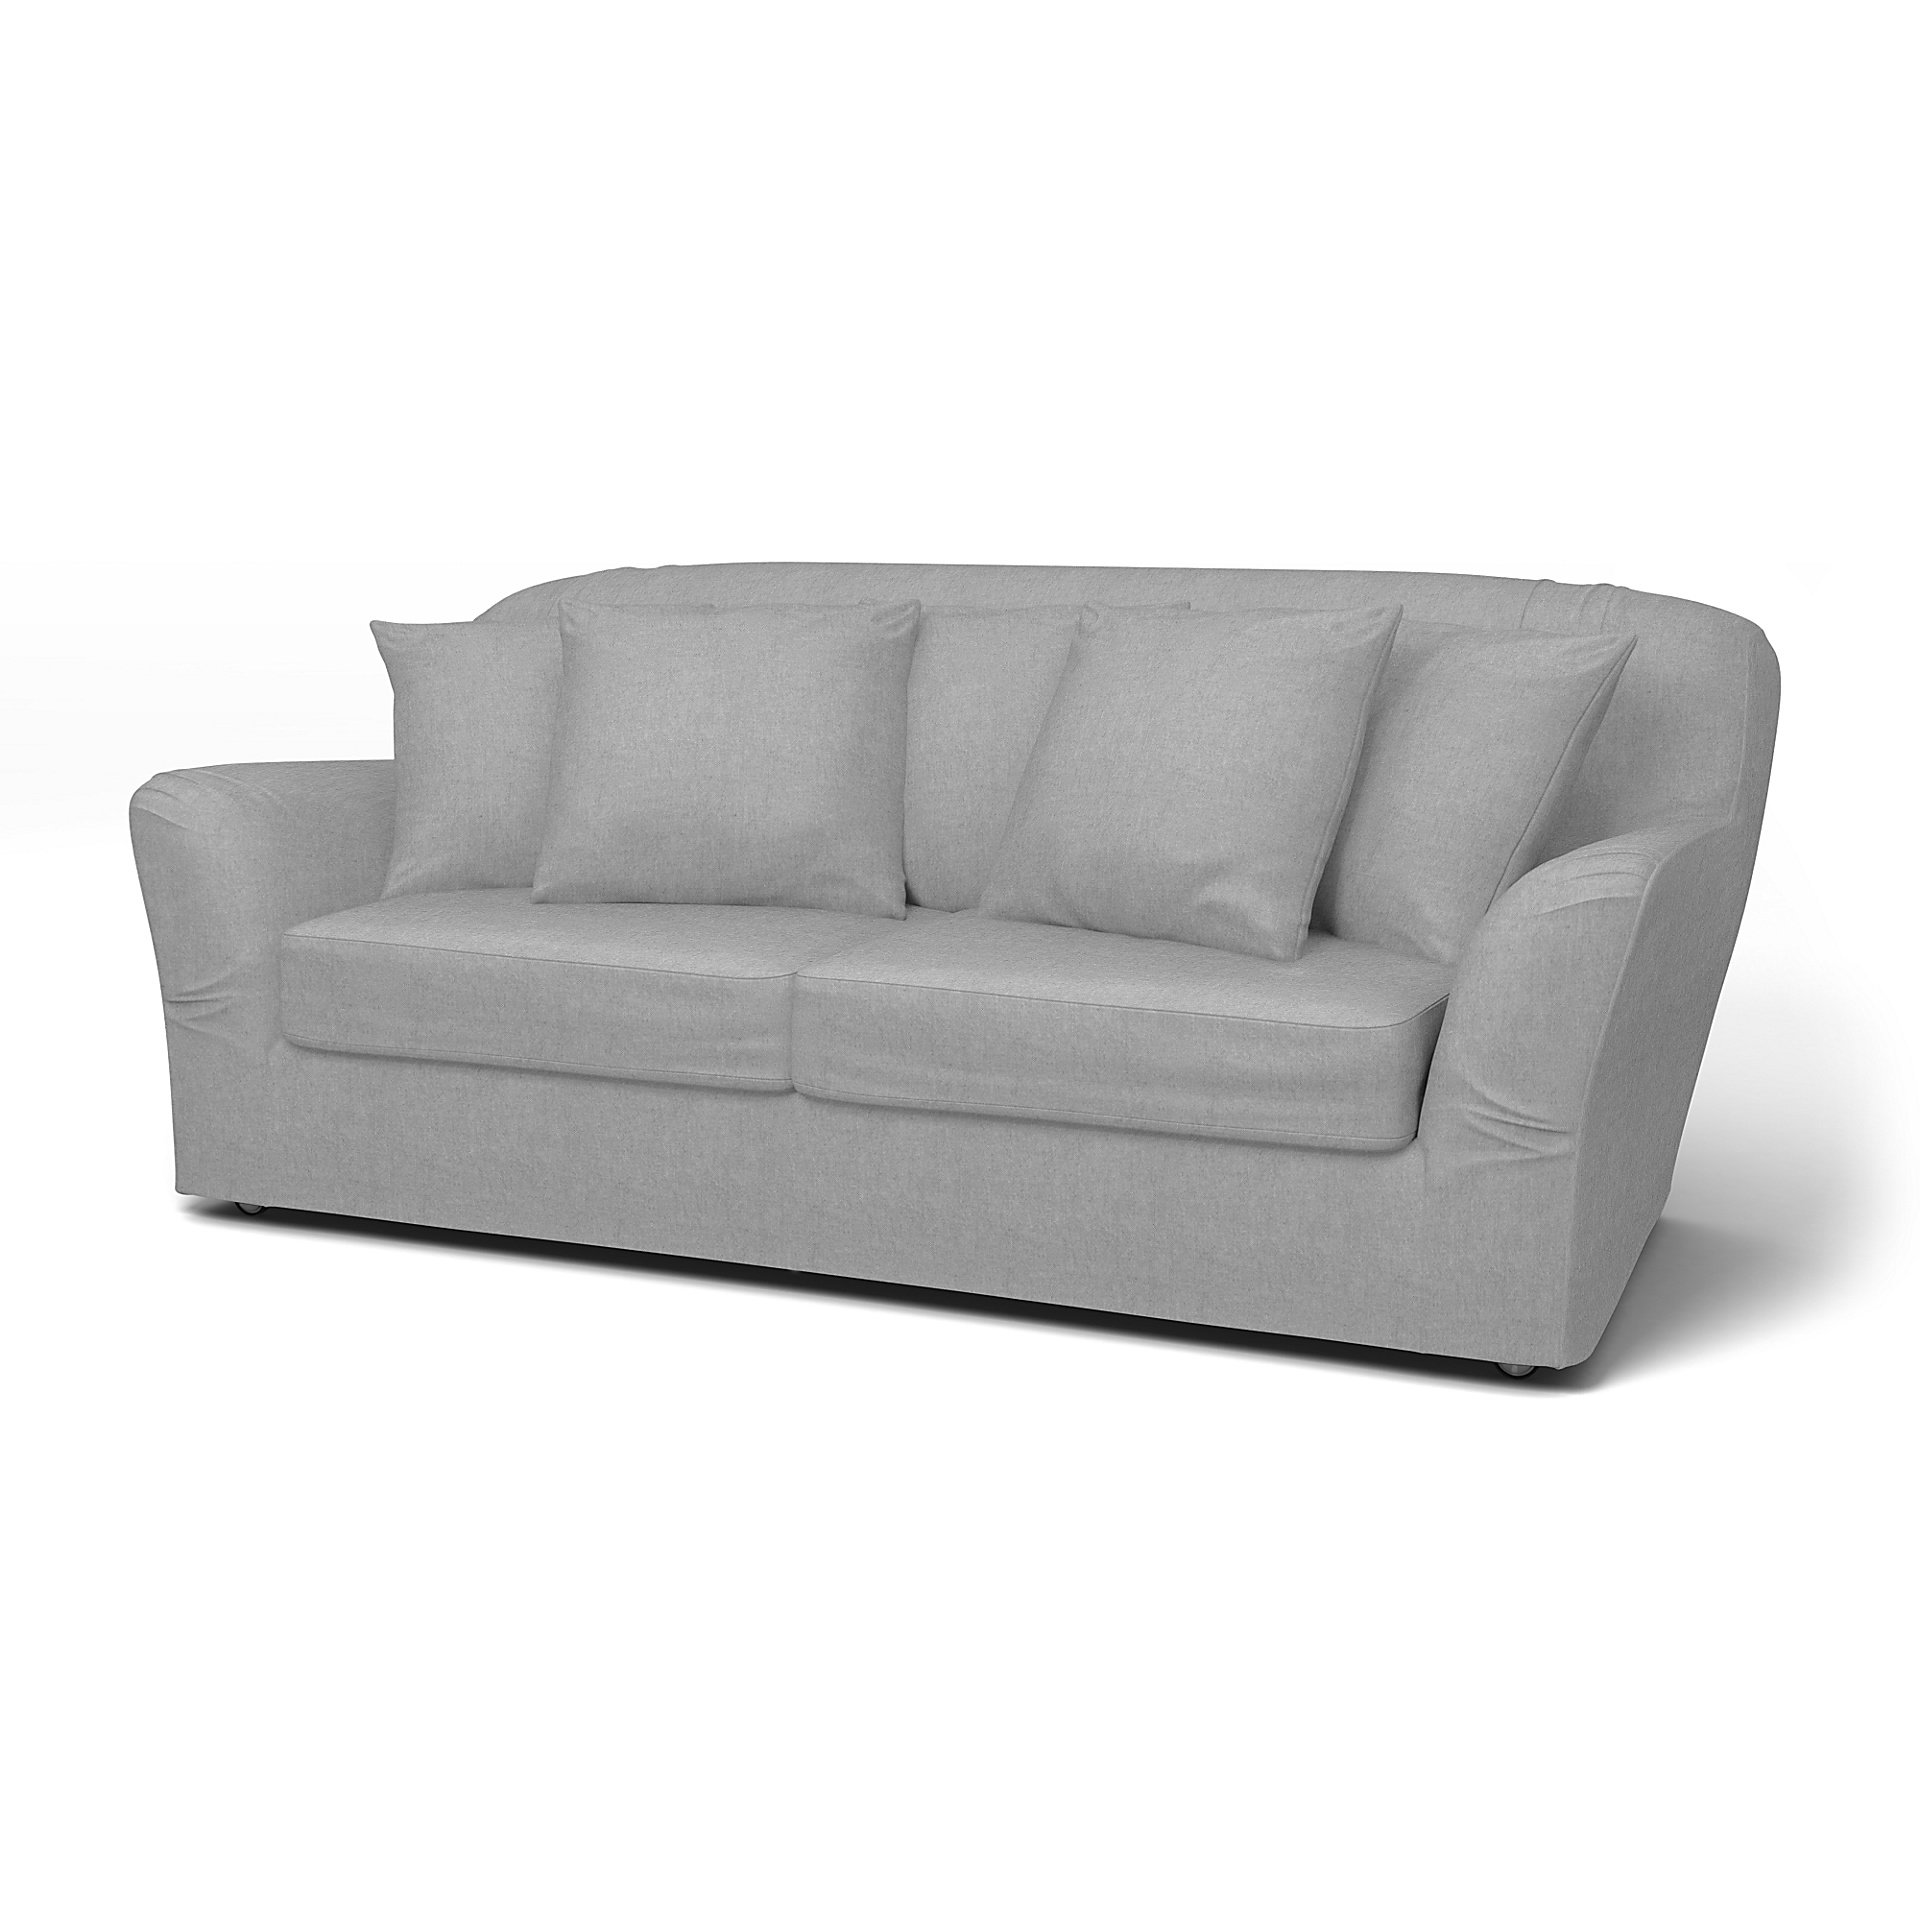 IKEA - Tomelilla Sofa Bed Cover (Small model), Graphite, Linen - Bemz